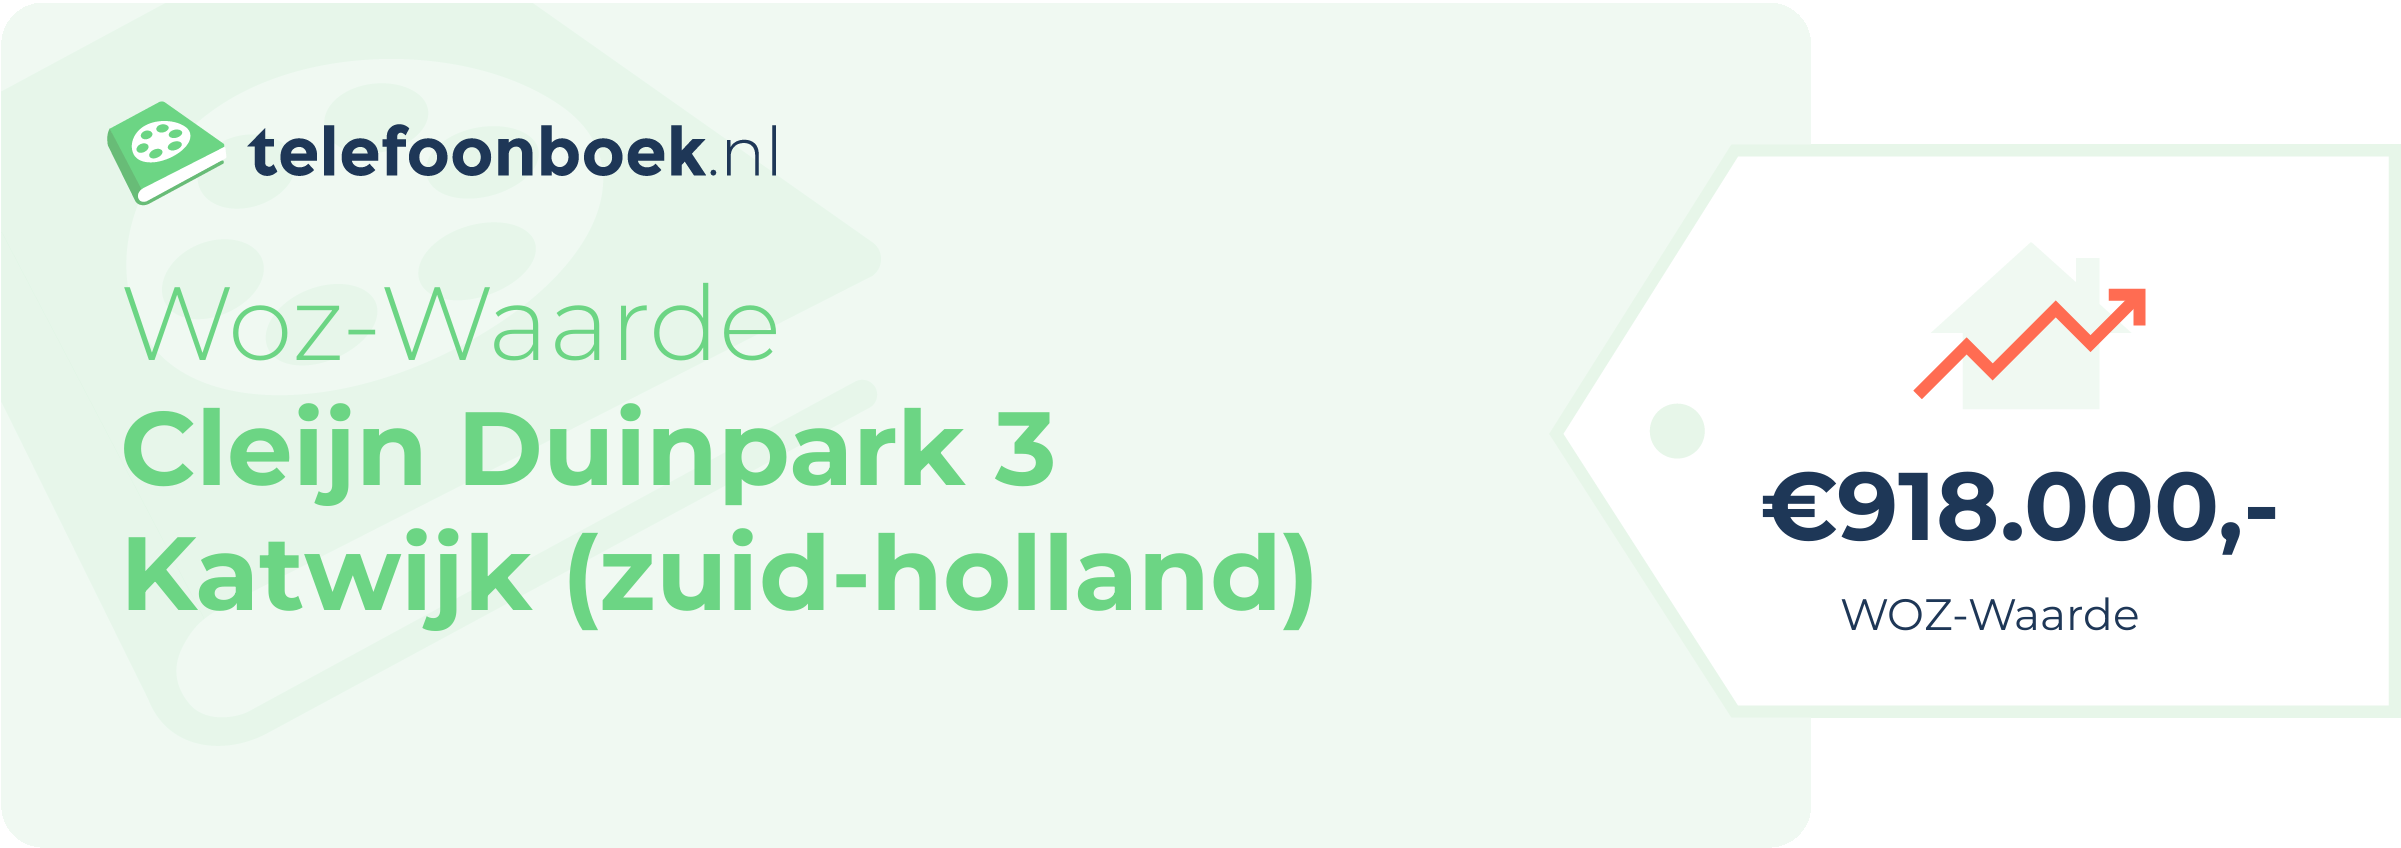 WOZ-waarde Cleijn Duinpark 3 Katwijk (Zuid-Holland)